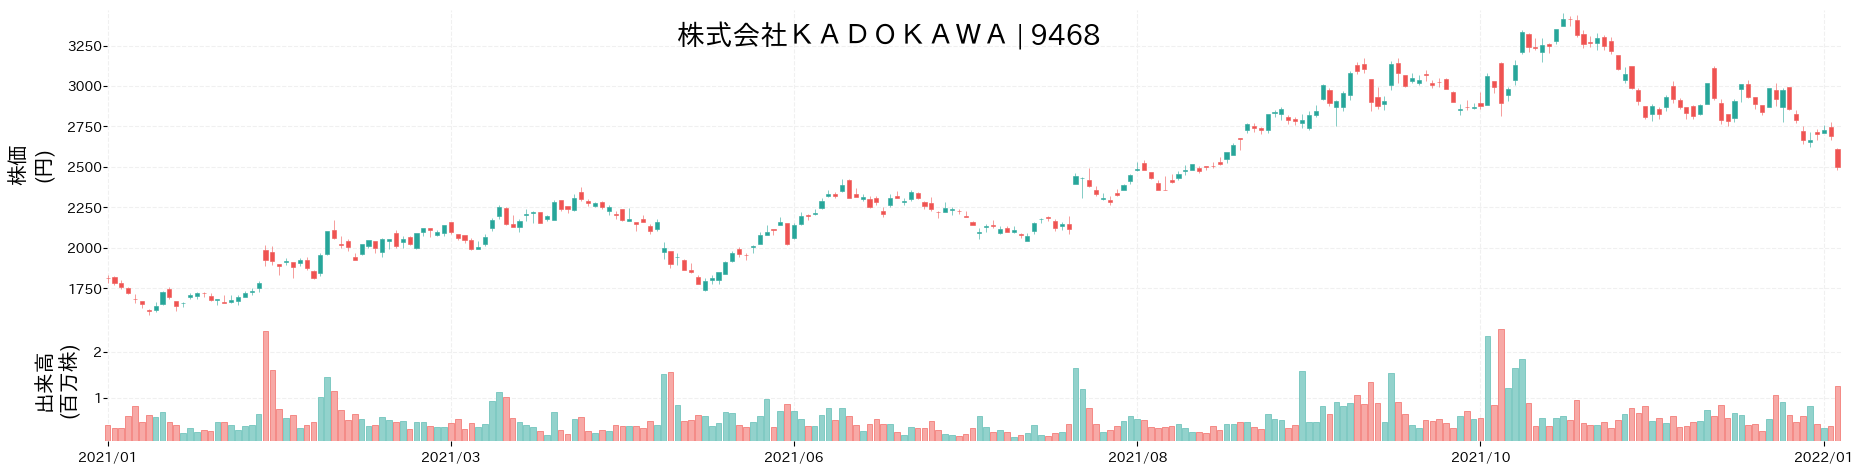 KADOKAWAの株価推移(2021)